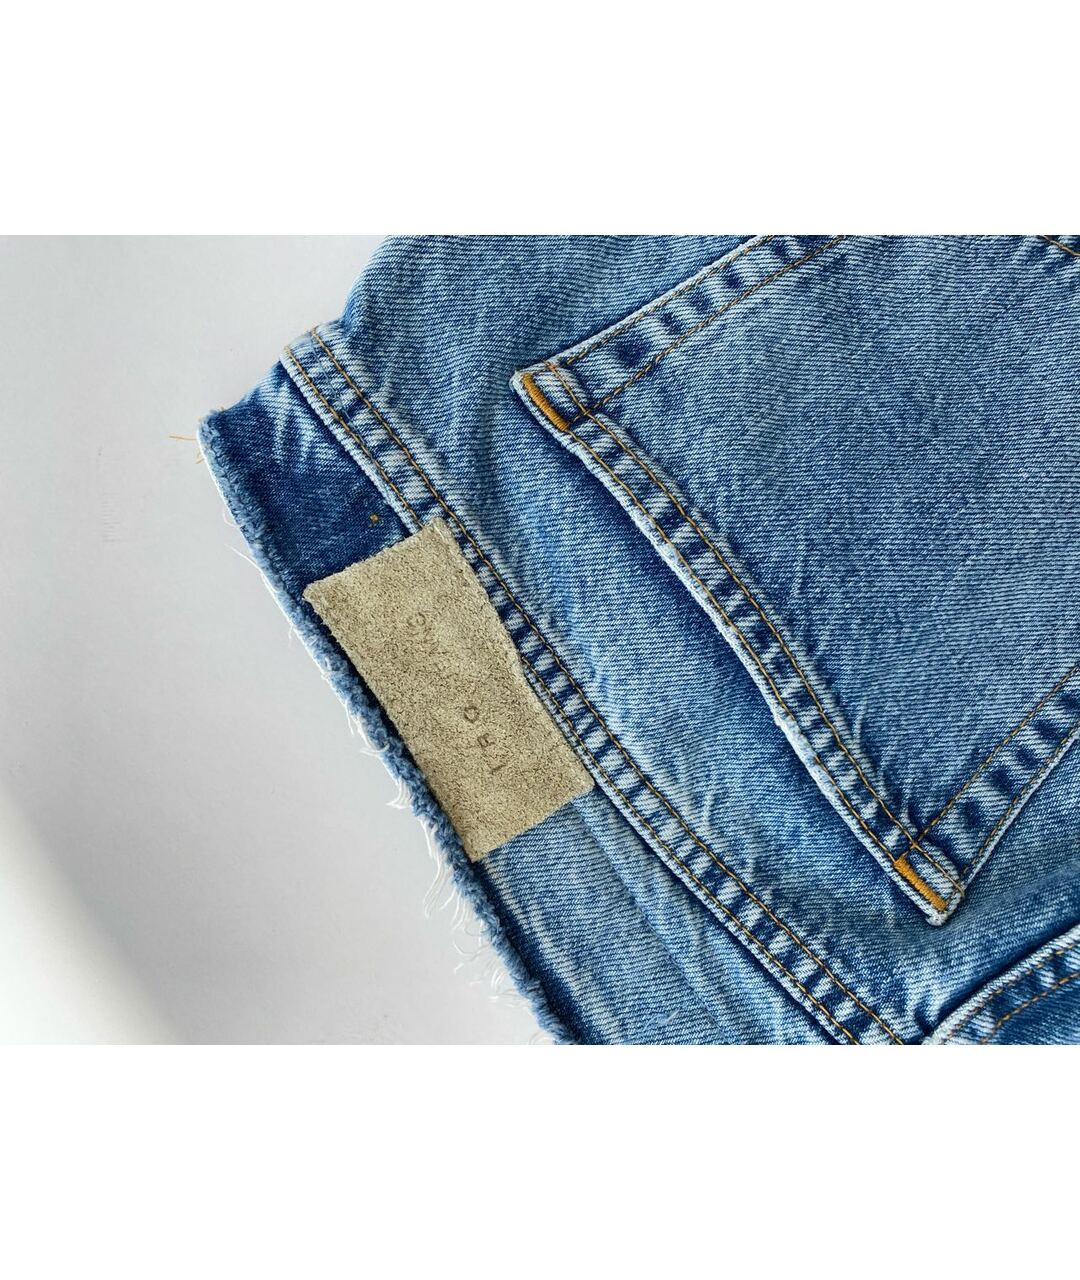 IRO Голубые хлопковые джинсы слим, фото 3